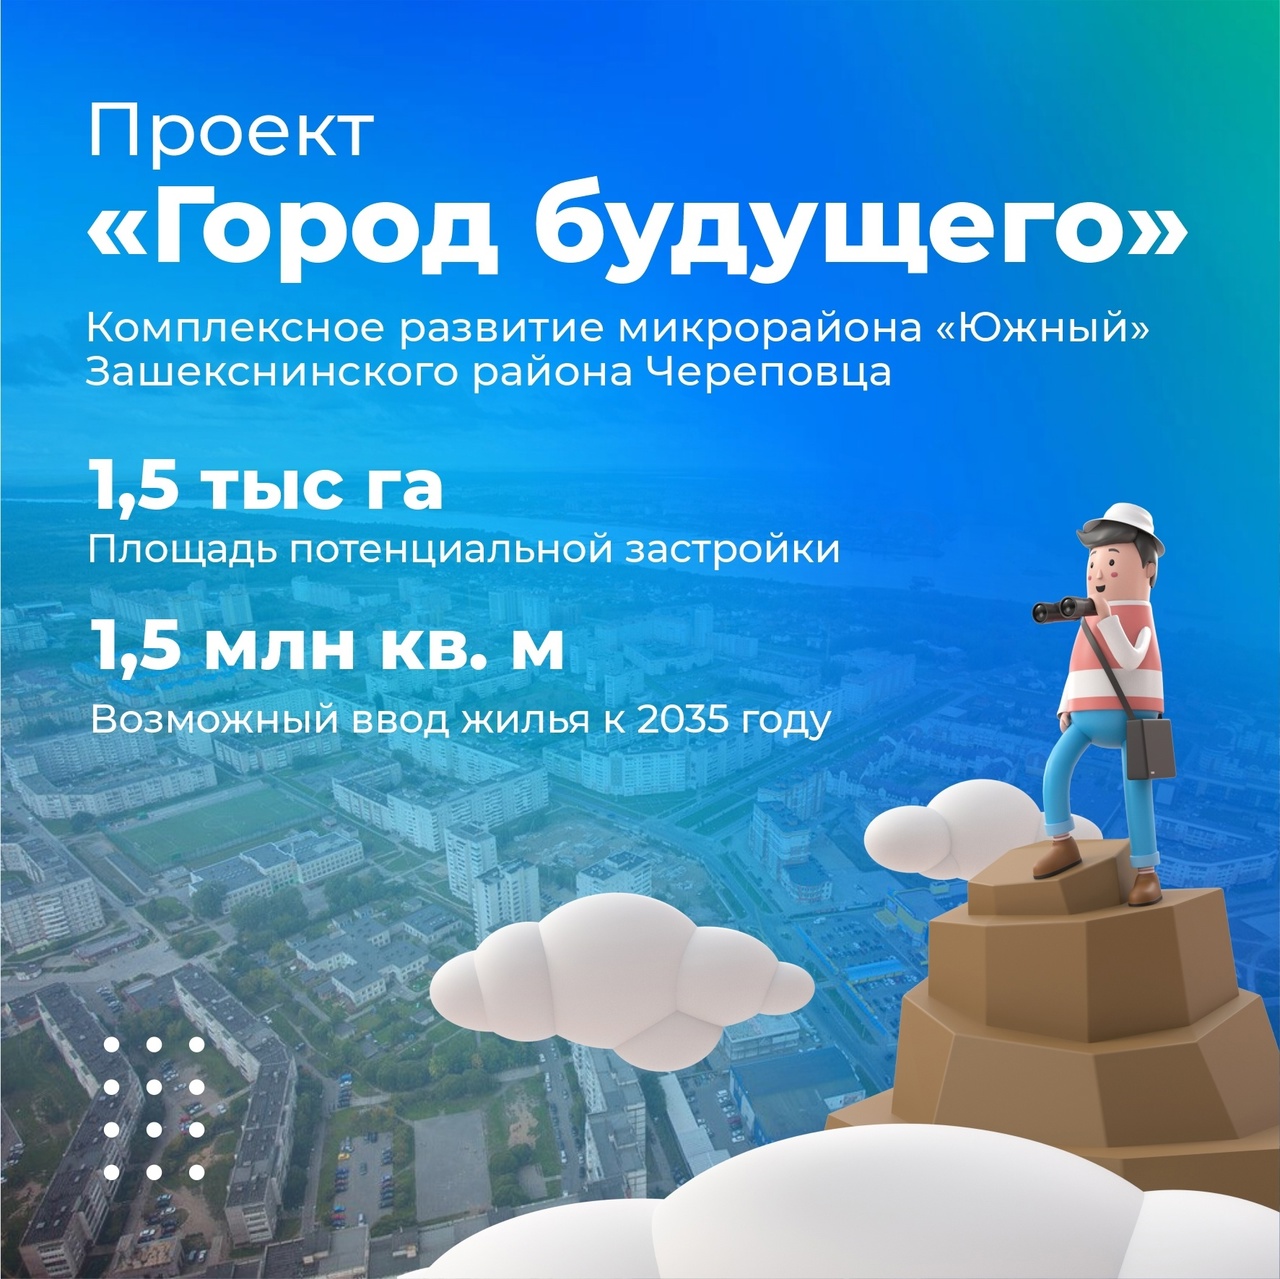 «Город будущего» построят в Зашекснинском районе Череповца